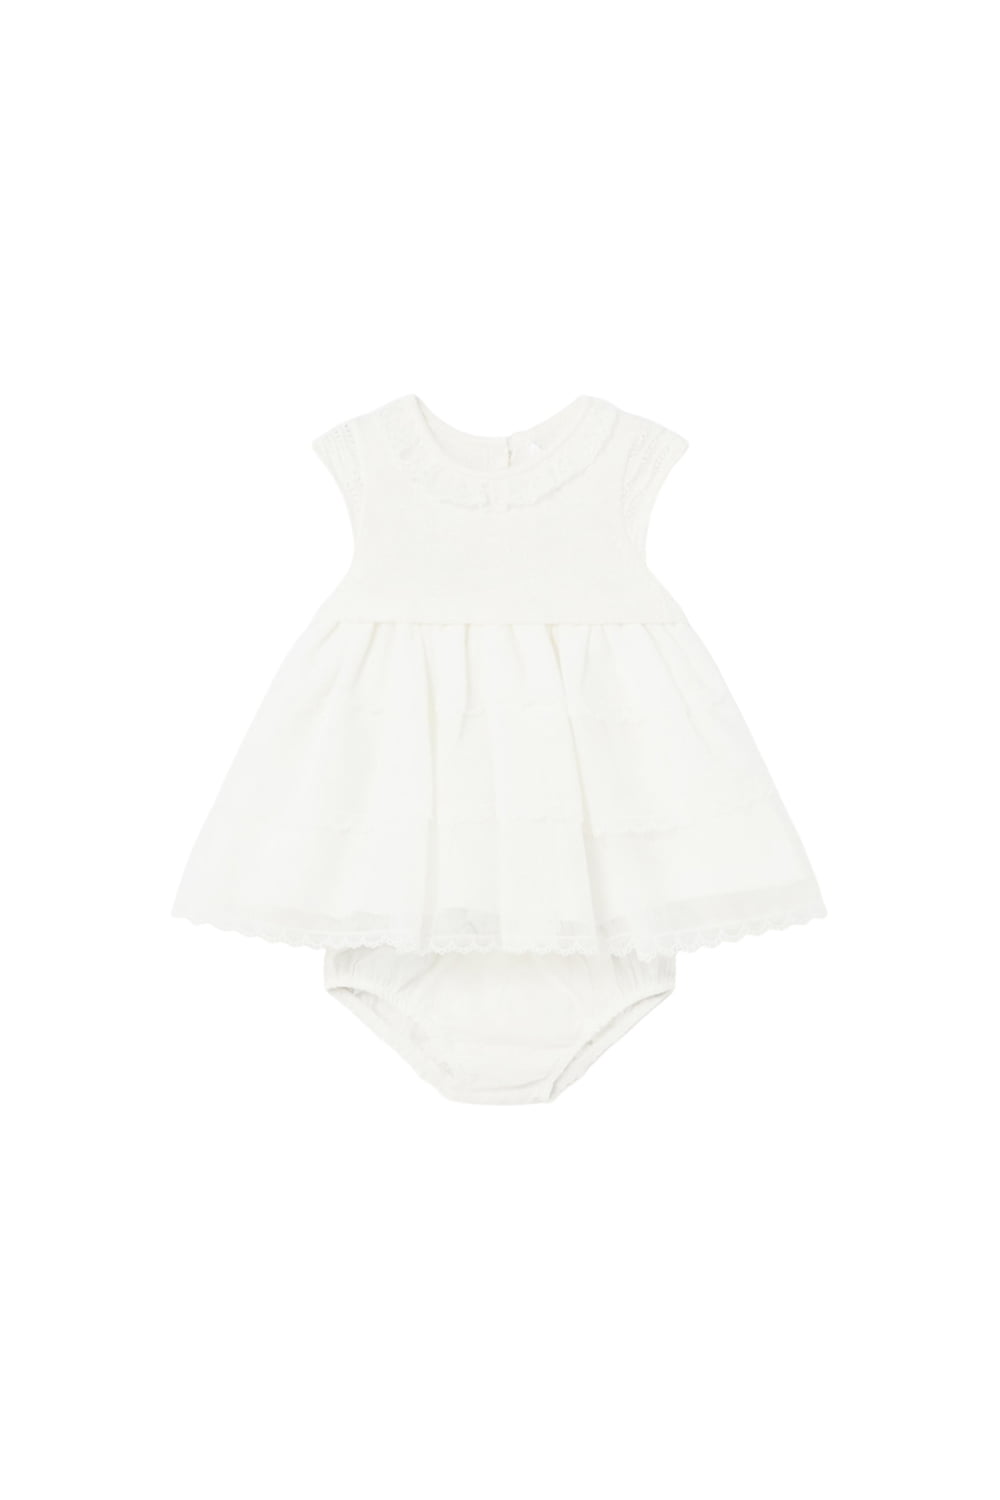 Παιδικό Φόρεμα Για Κορίτσι MAYORAL 24-01825-031 Άσπρο